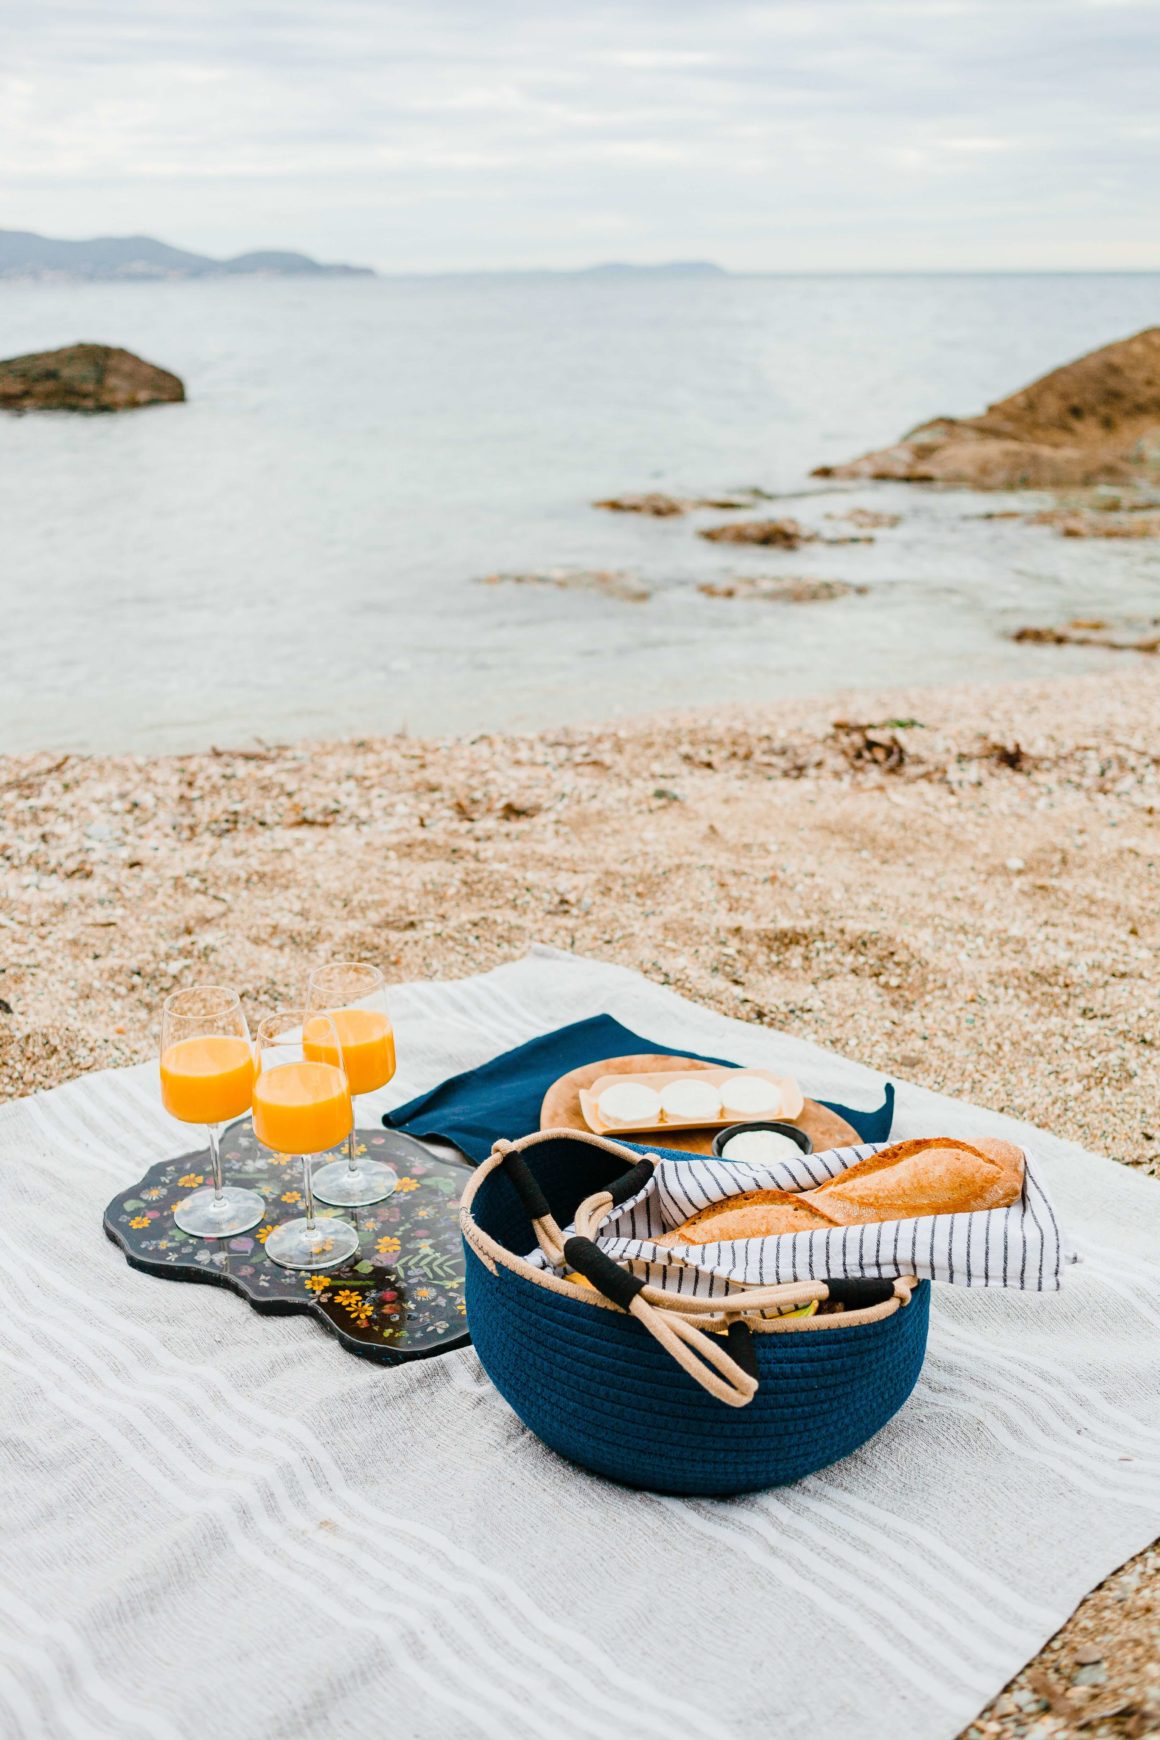 Aproveite as suas férias na praia com um delicioso piquenique